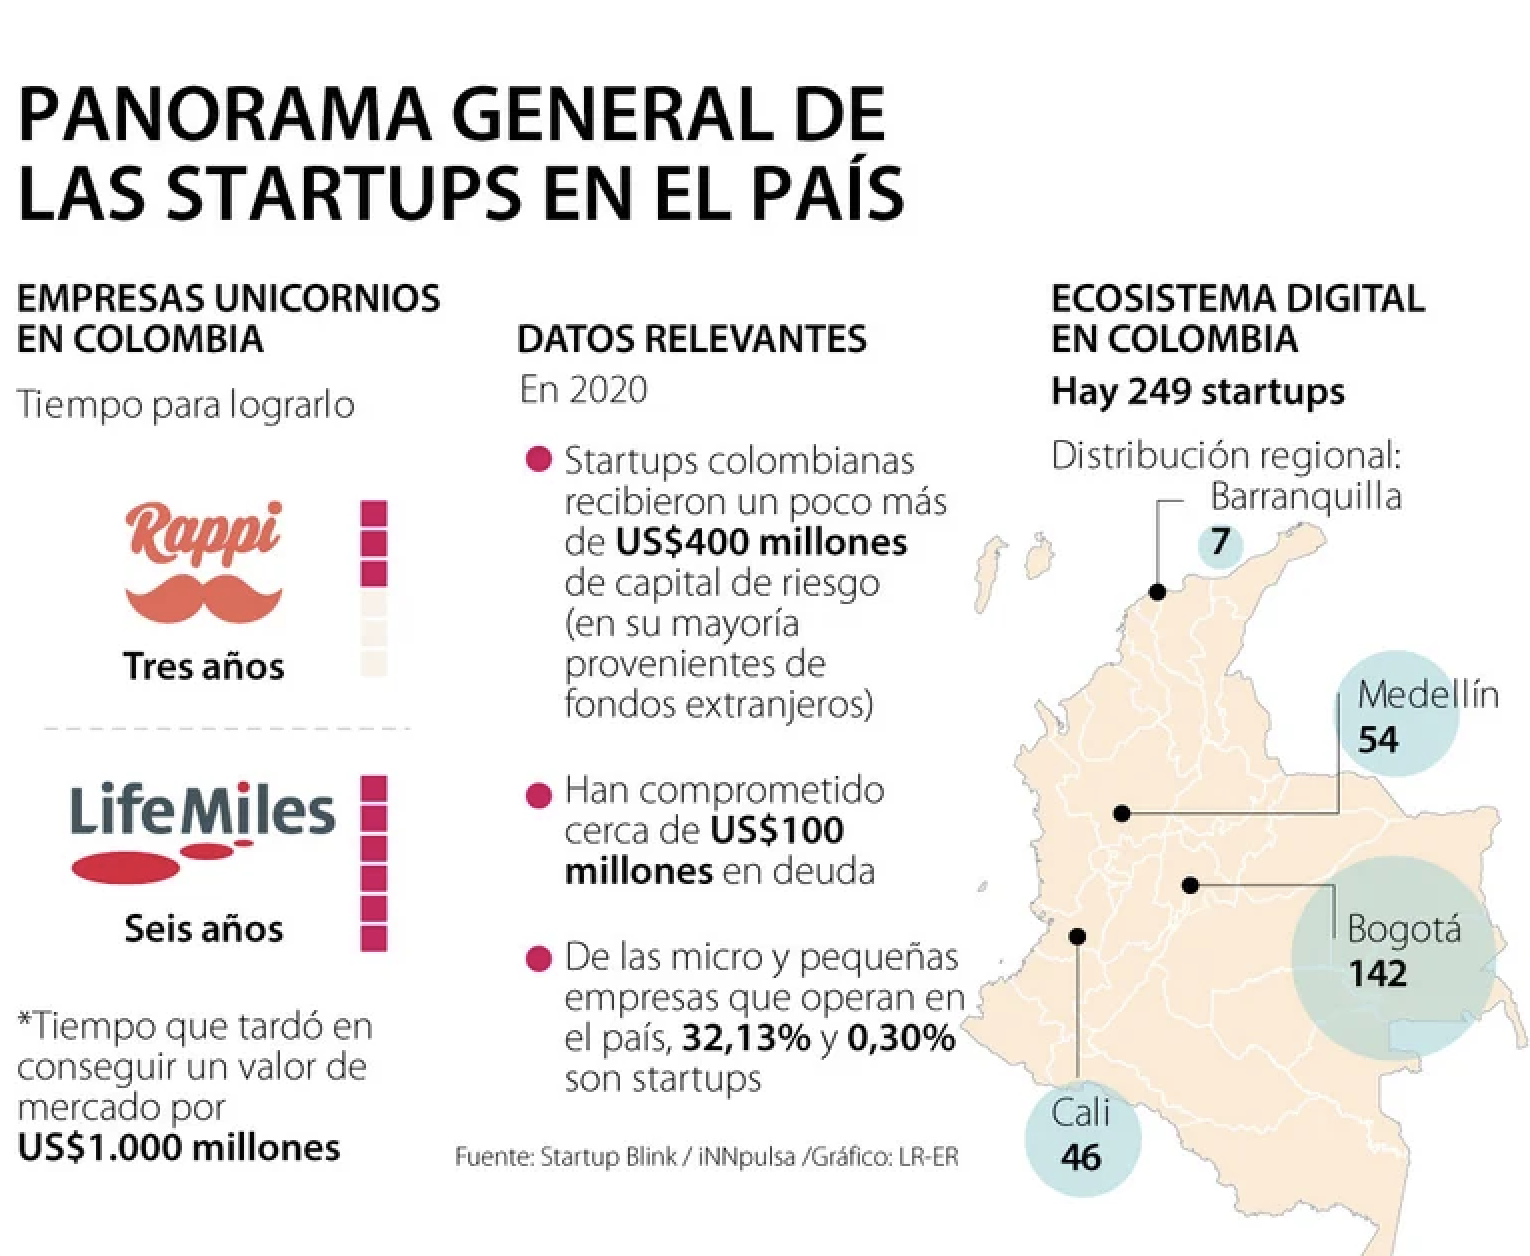 Se han creado 249 empresas digitales en medio del boom de las startups en el país